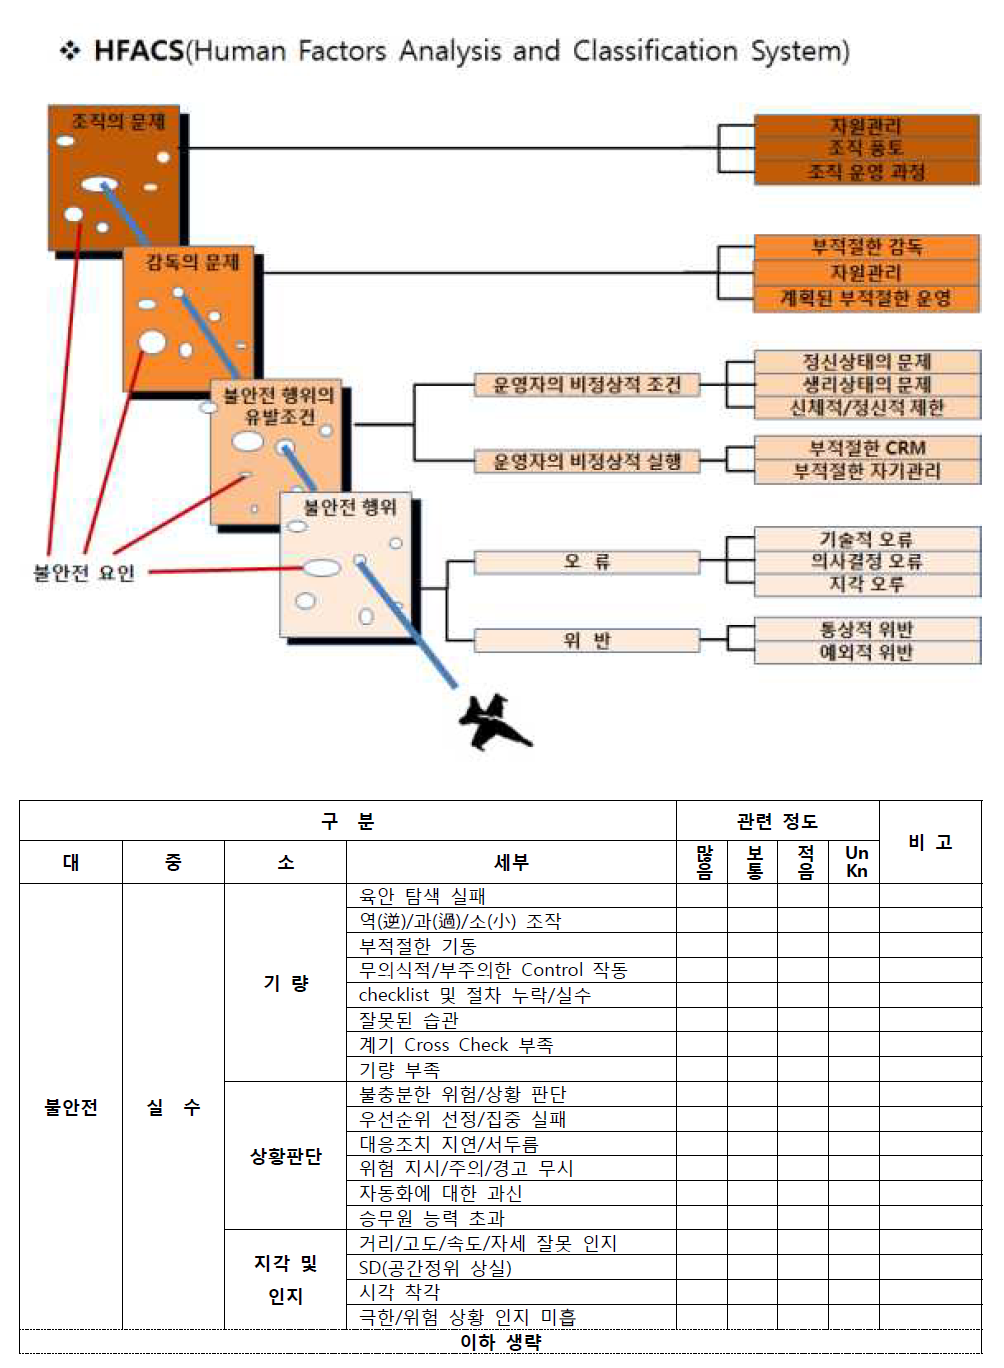 항공안전관리단의 사고원인분석분류체계